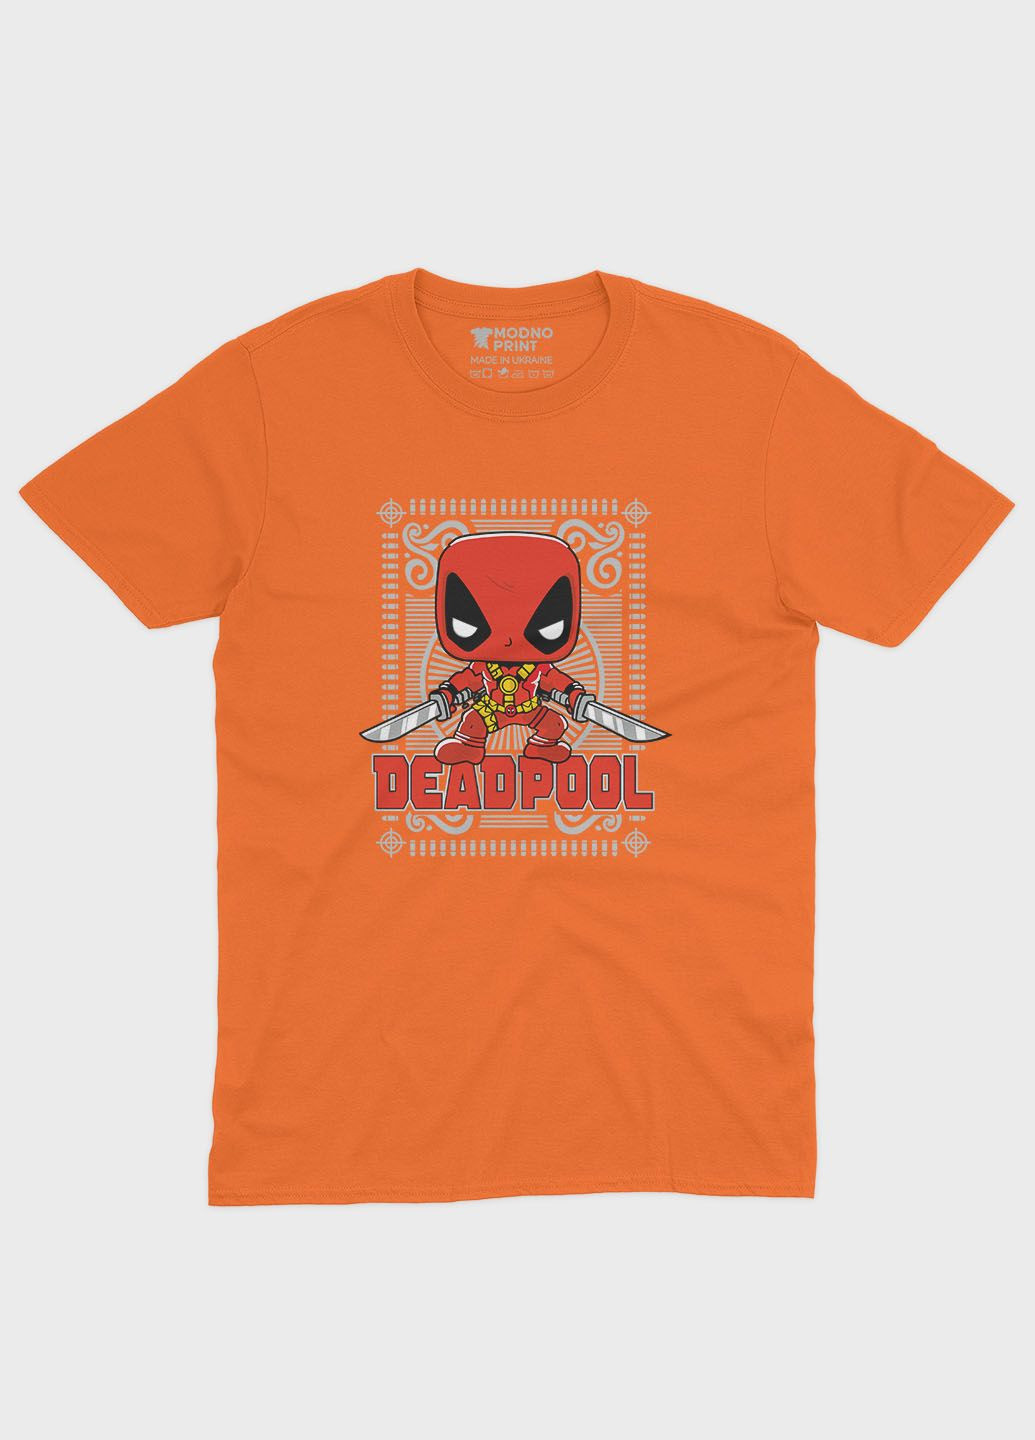 Оранжевая демисезонная футболка для мальчика с принтом антигероя - дедпул (ts001-1-ora-006-015-008-b) Modno